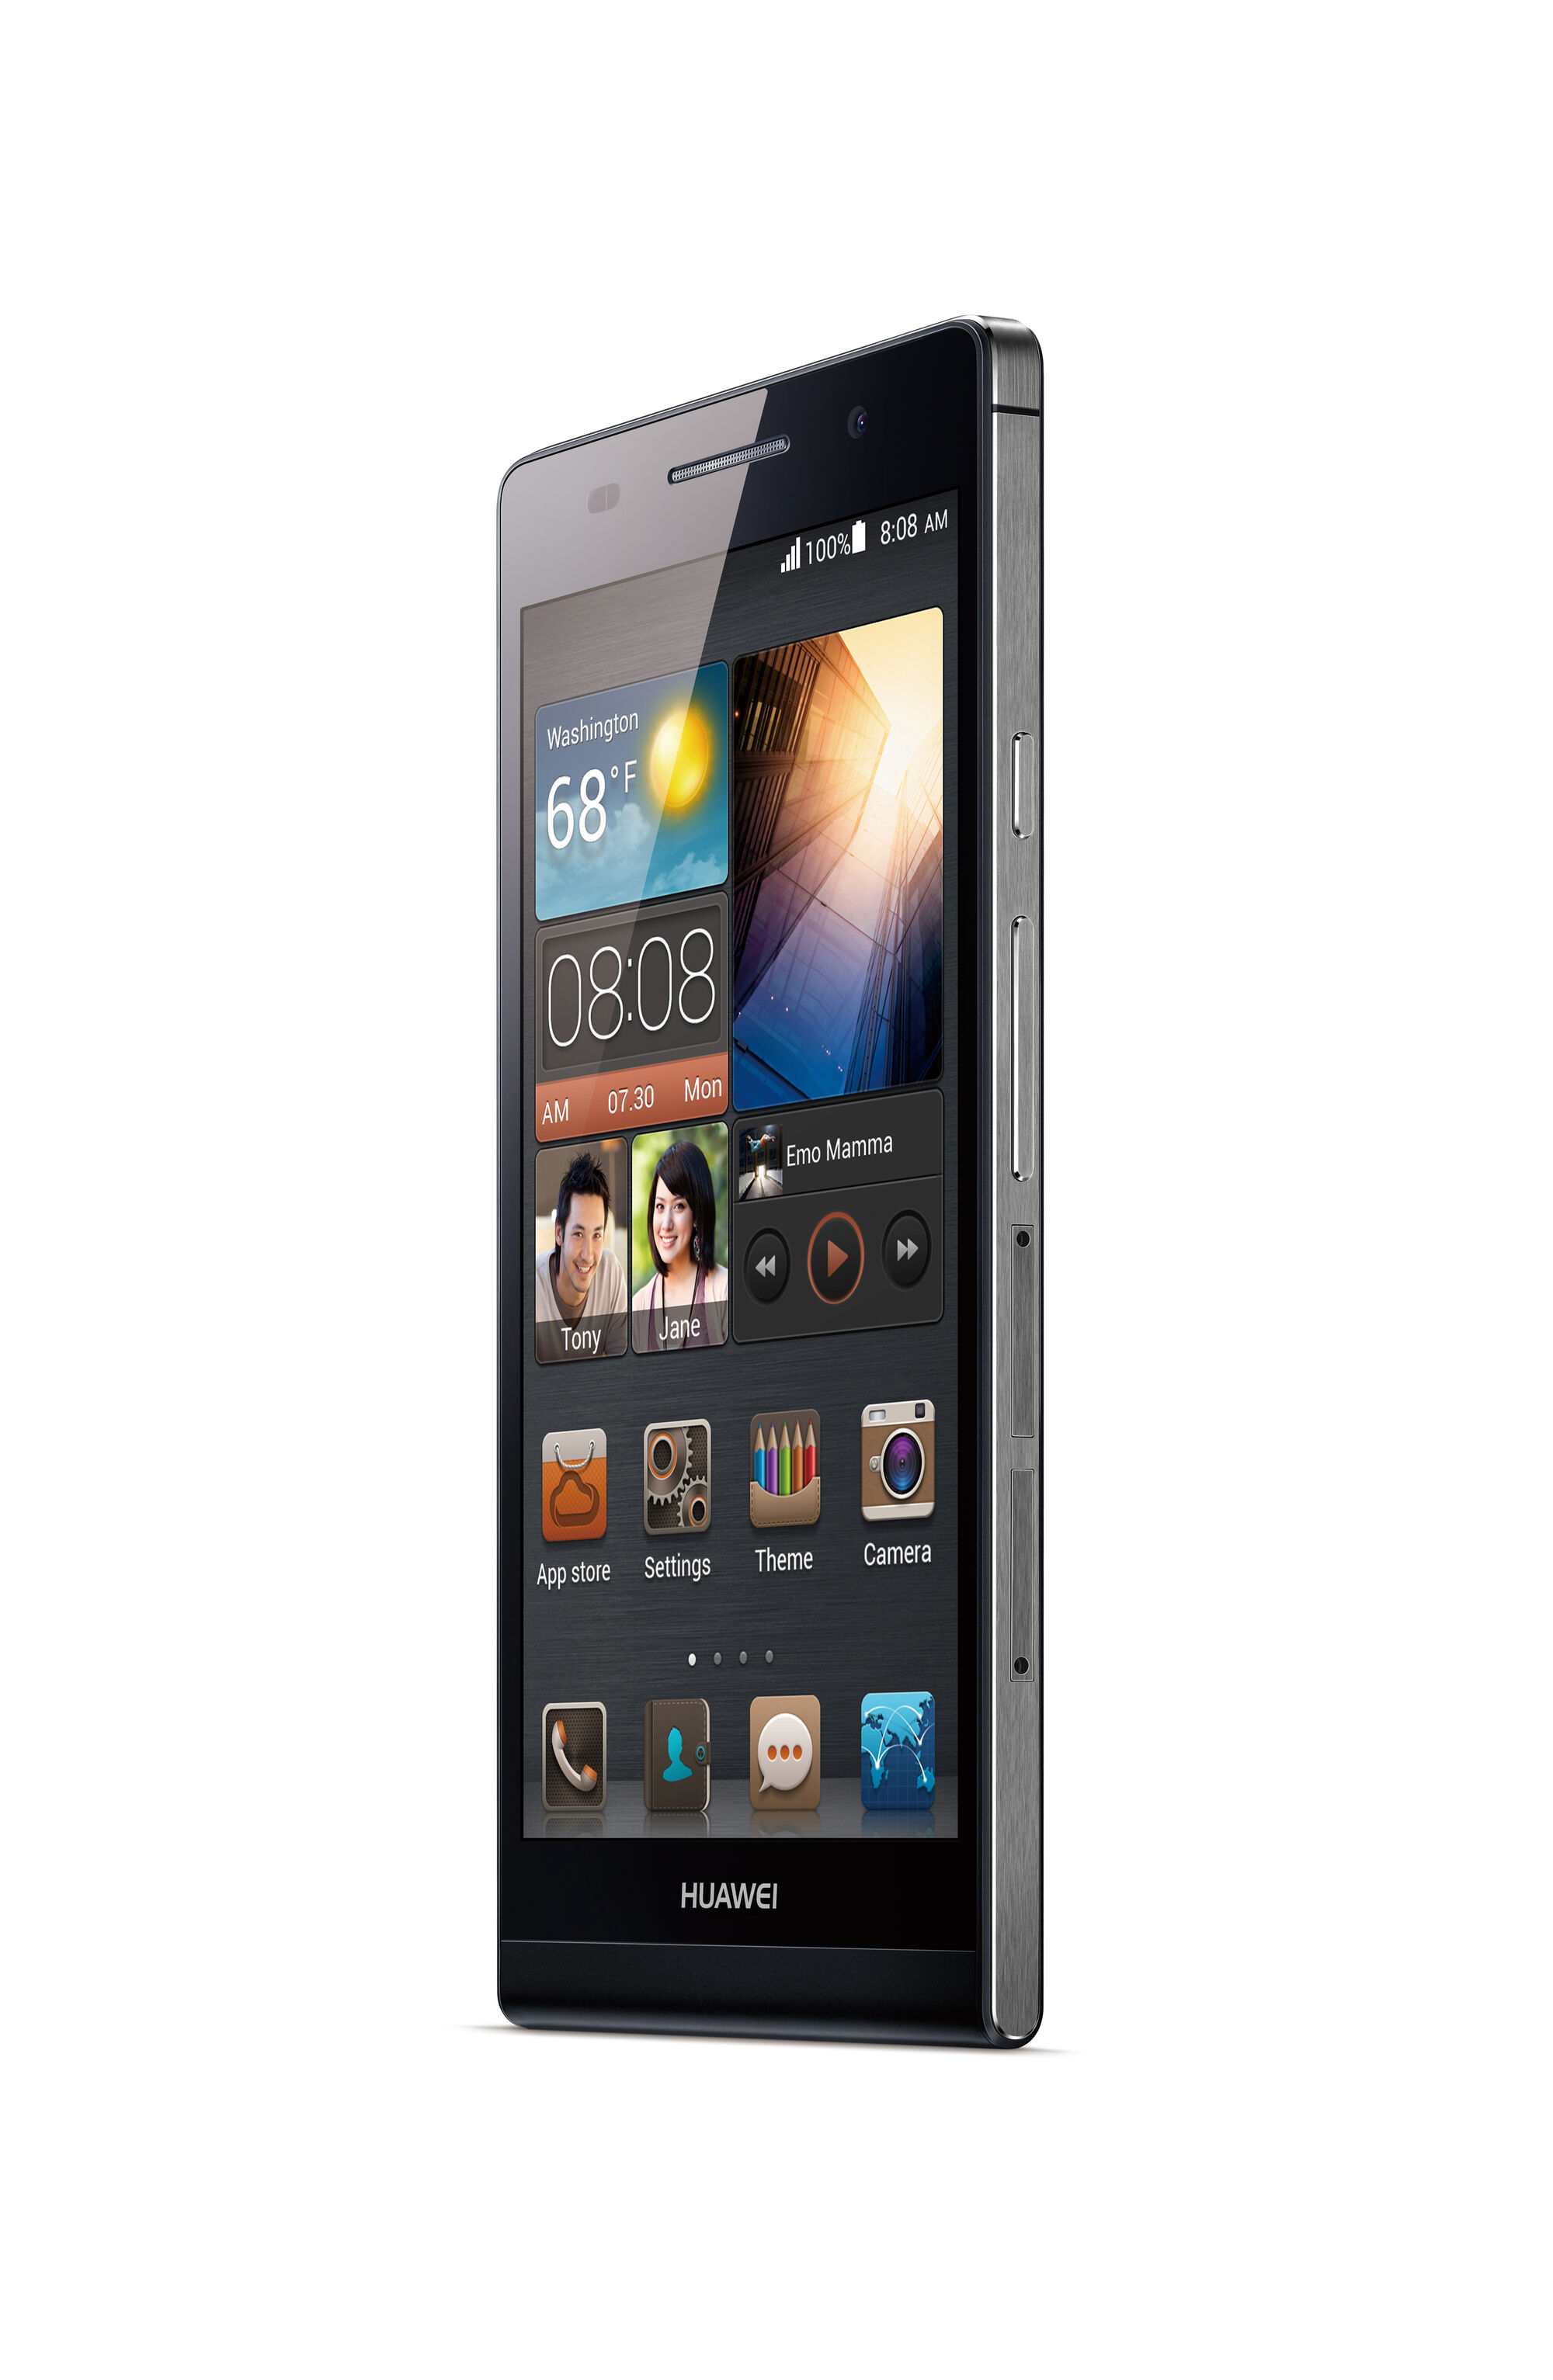 Huawei Ascend P6 | Smartphone Wiki | Fandom